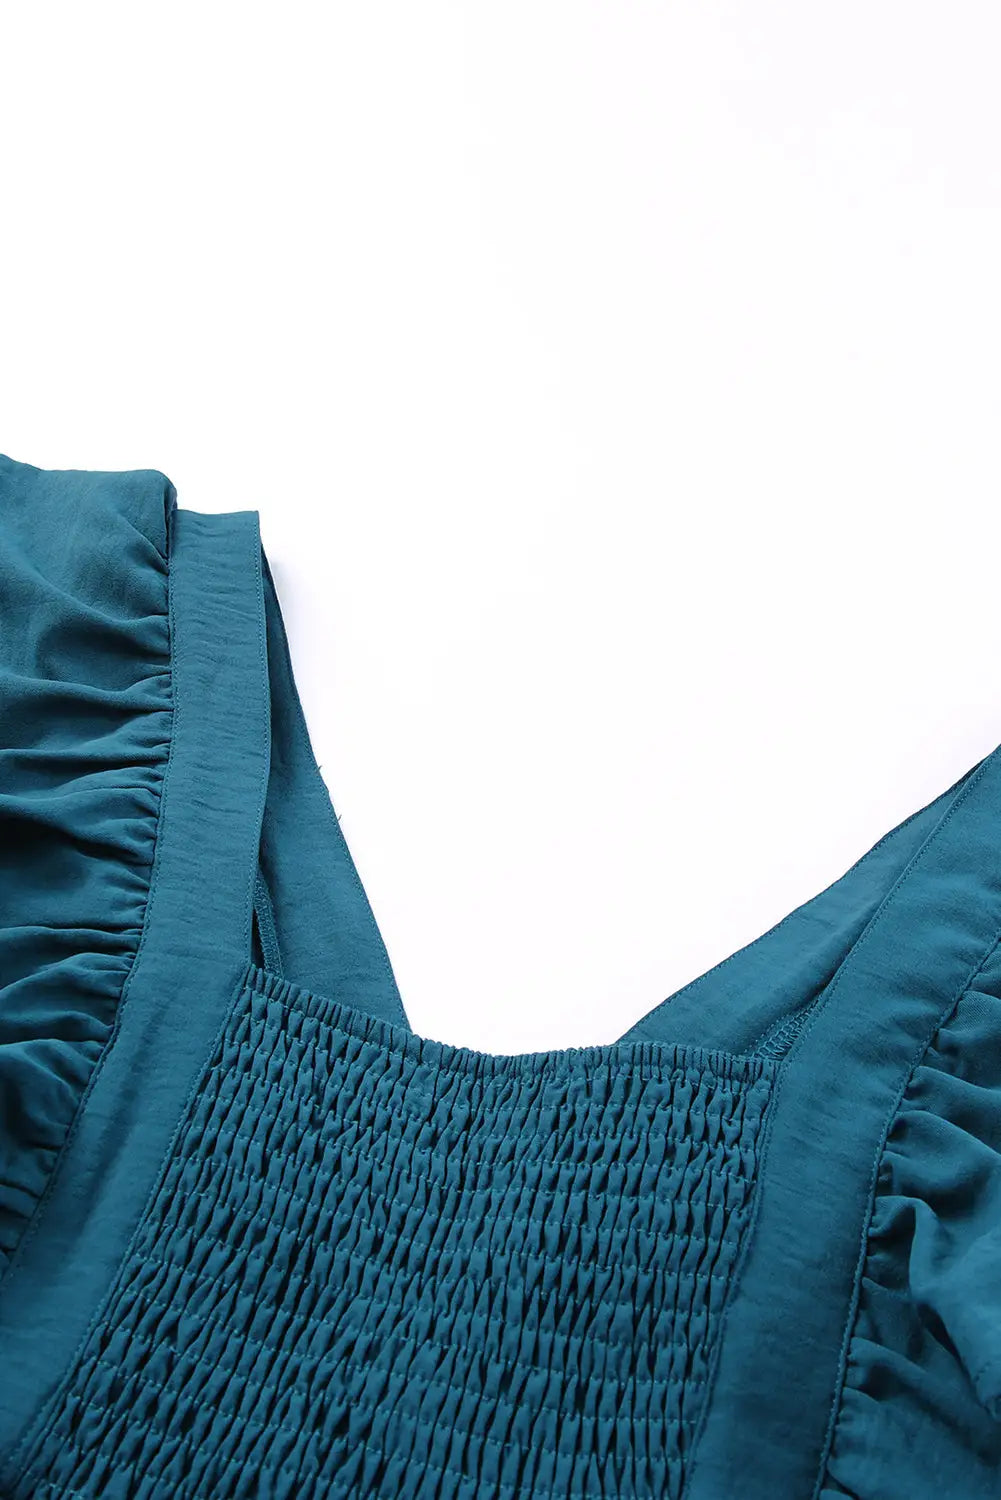 Blue ruffle trim v neck smocking back mini dress - dresses